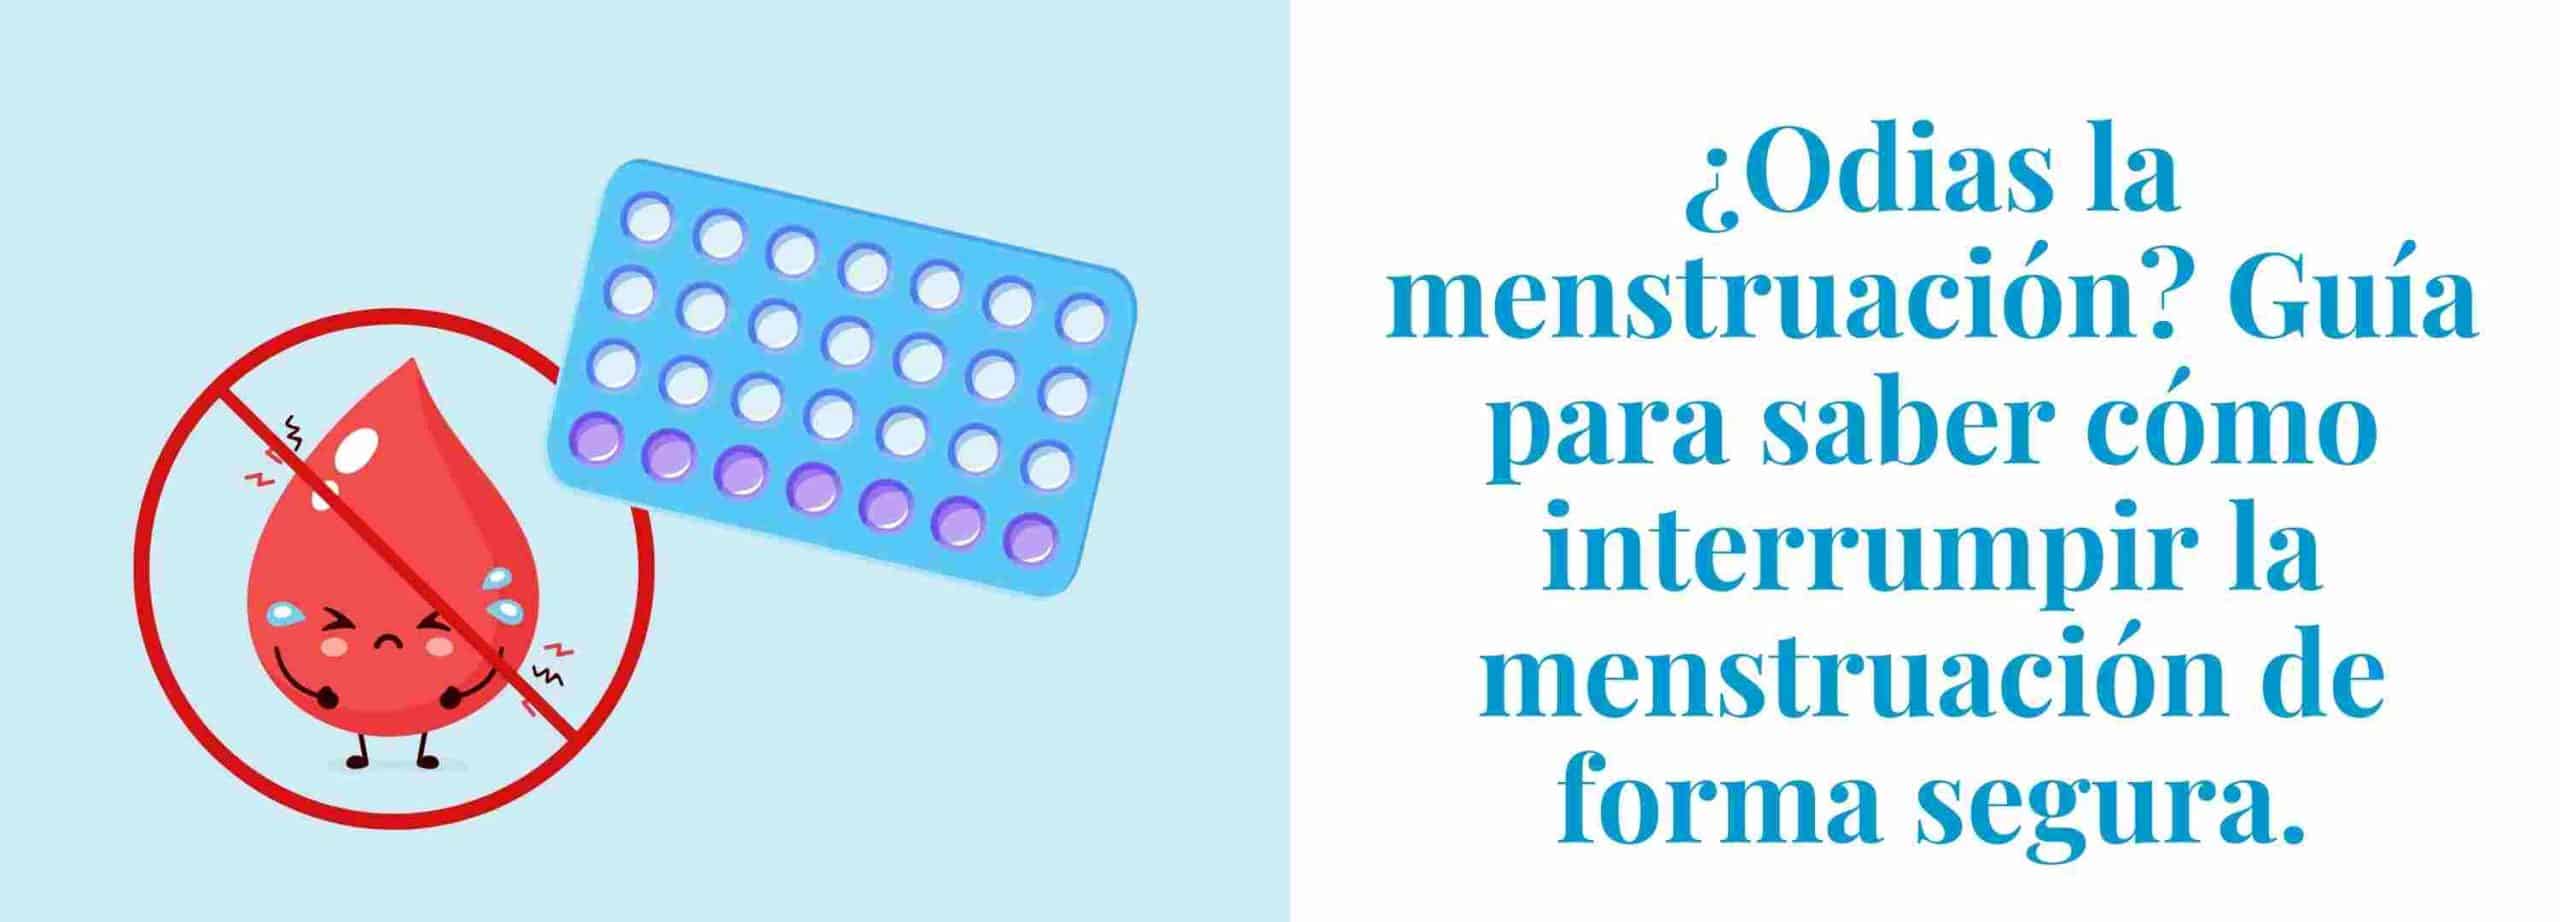 ¿Odias la menstruación? Guía para saber cómo interrumpir tu menstruación de forma segura